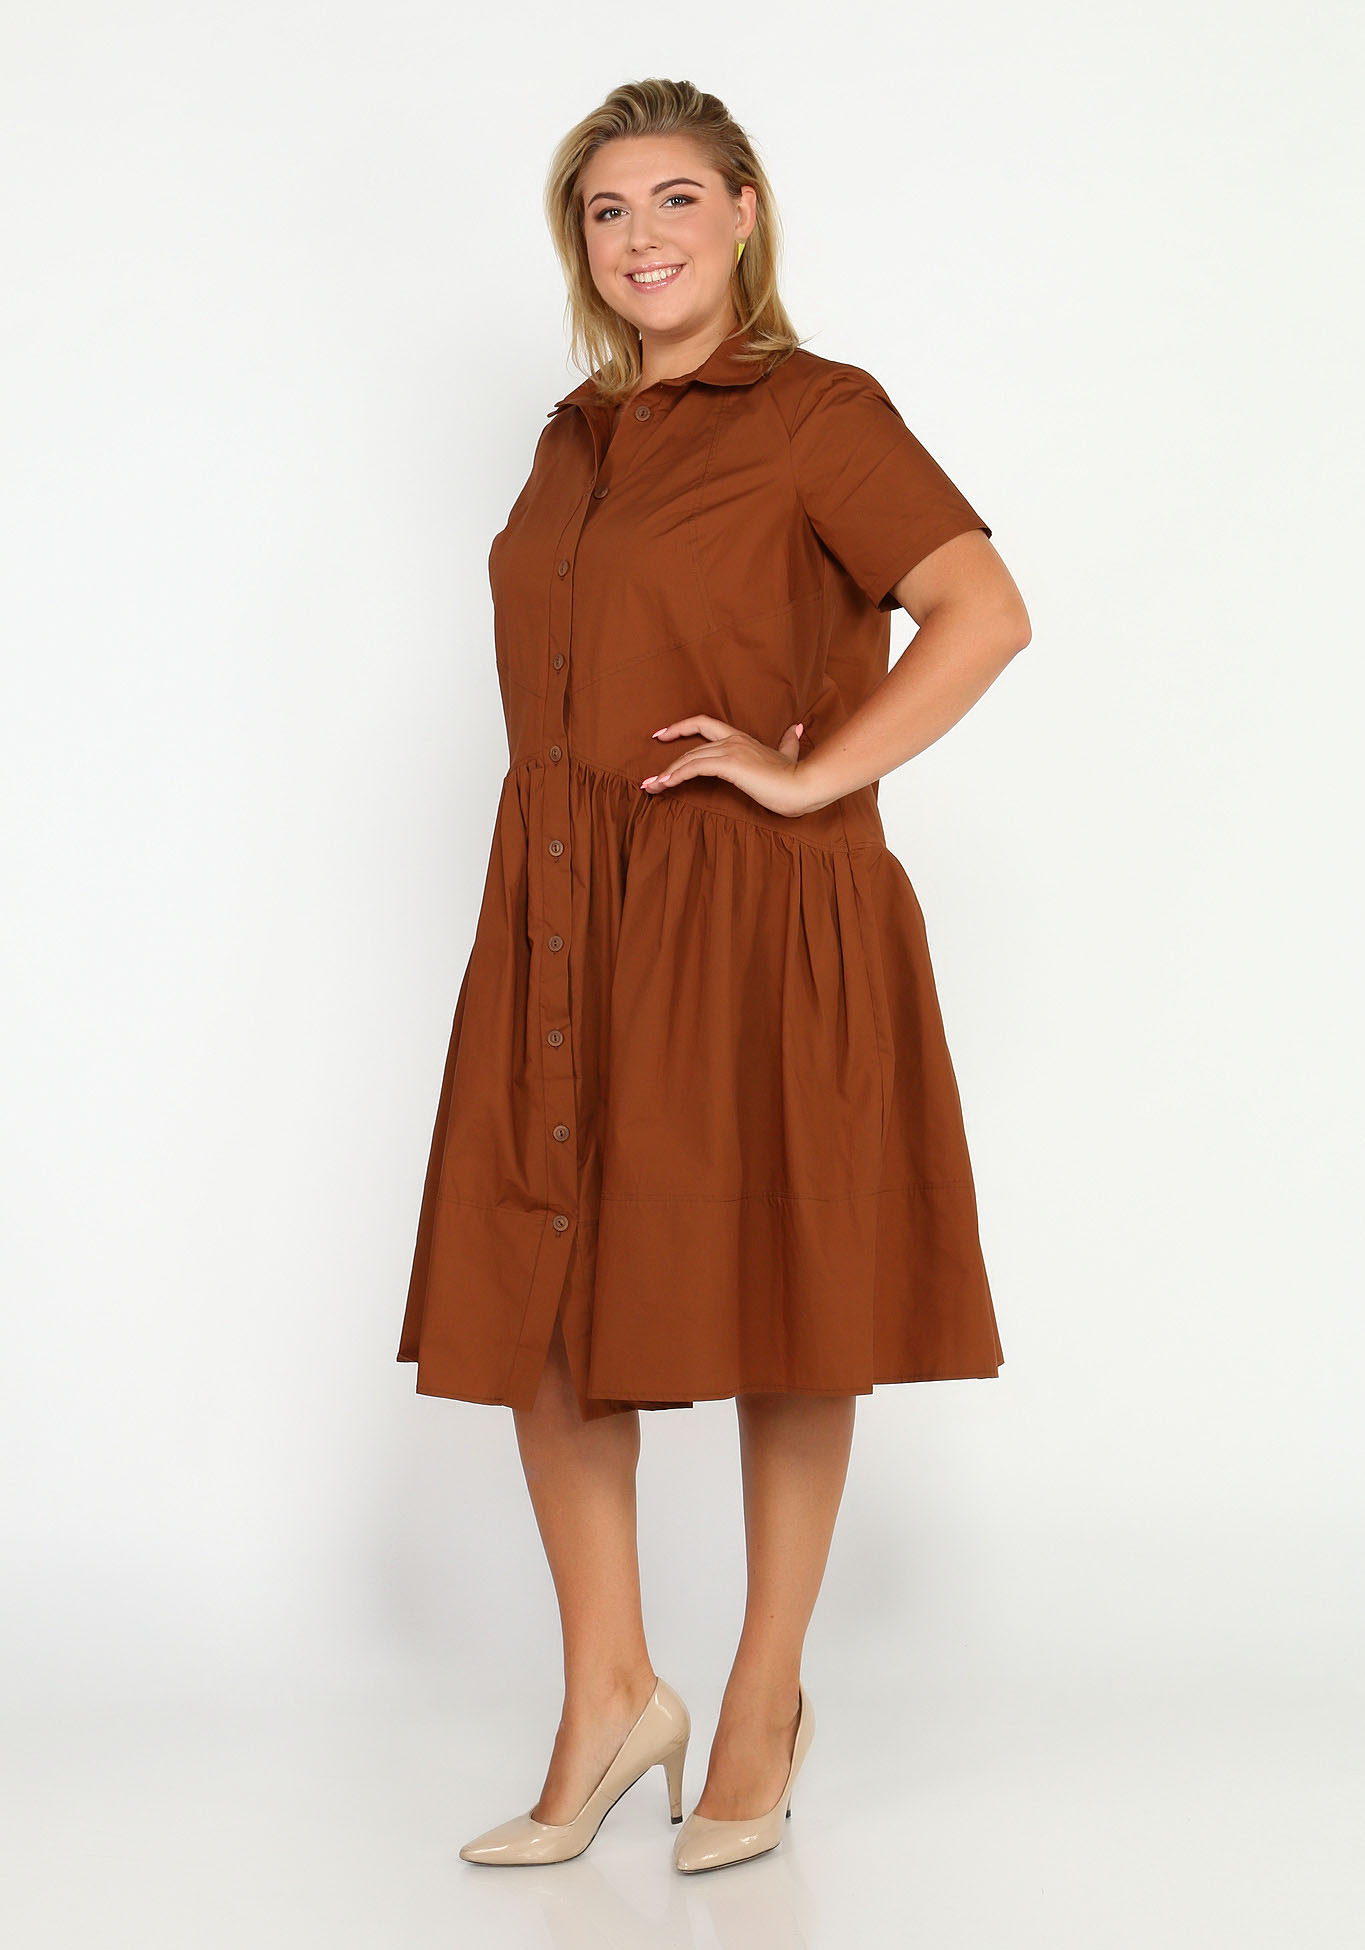 Платье с фигурными рельефами на пуговицах Elletto Life, размер 44, цвет коричневый - фото 1